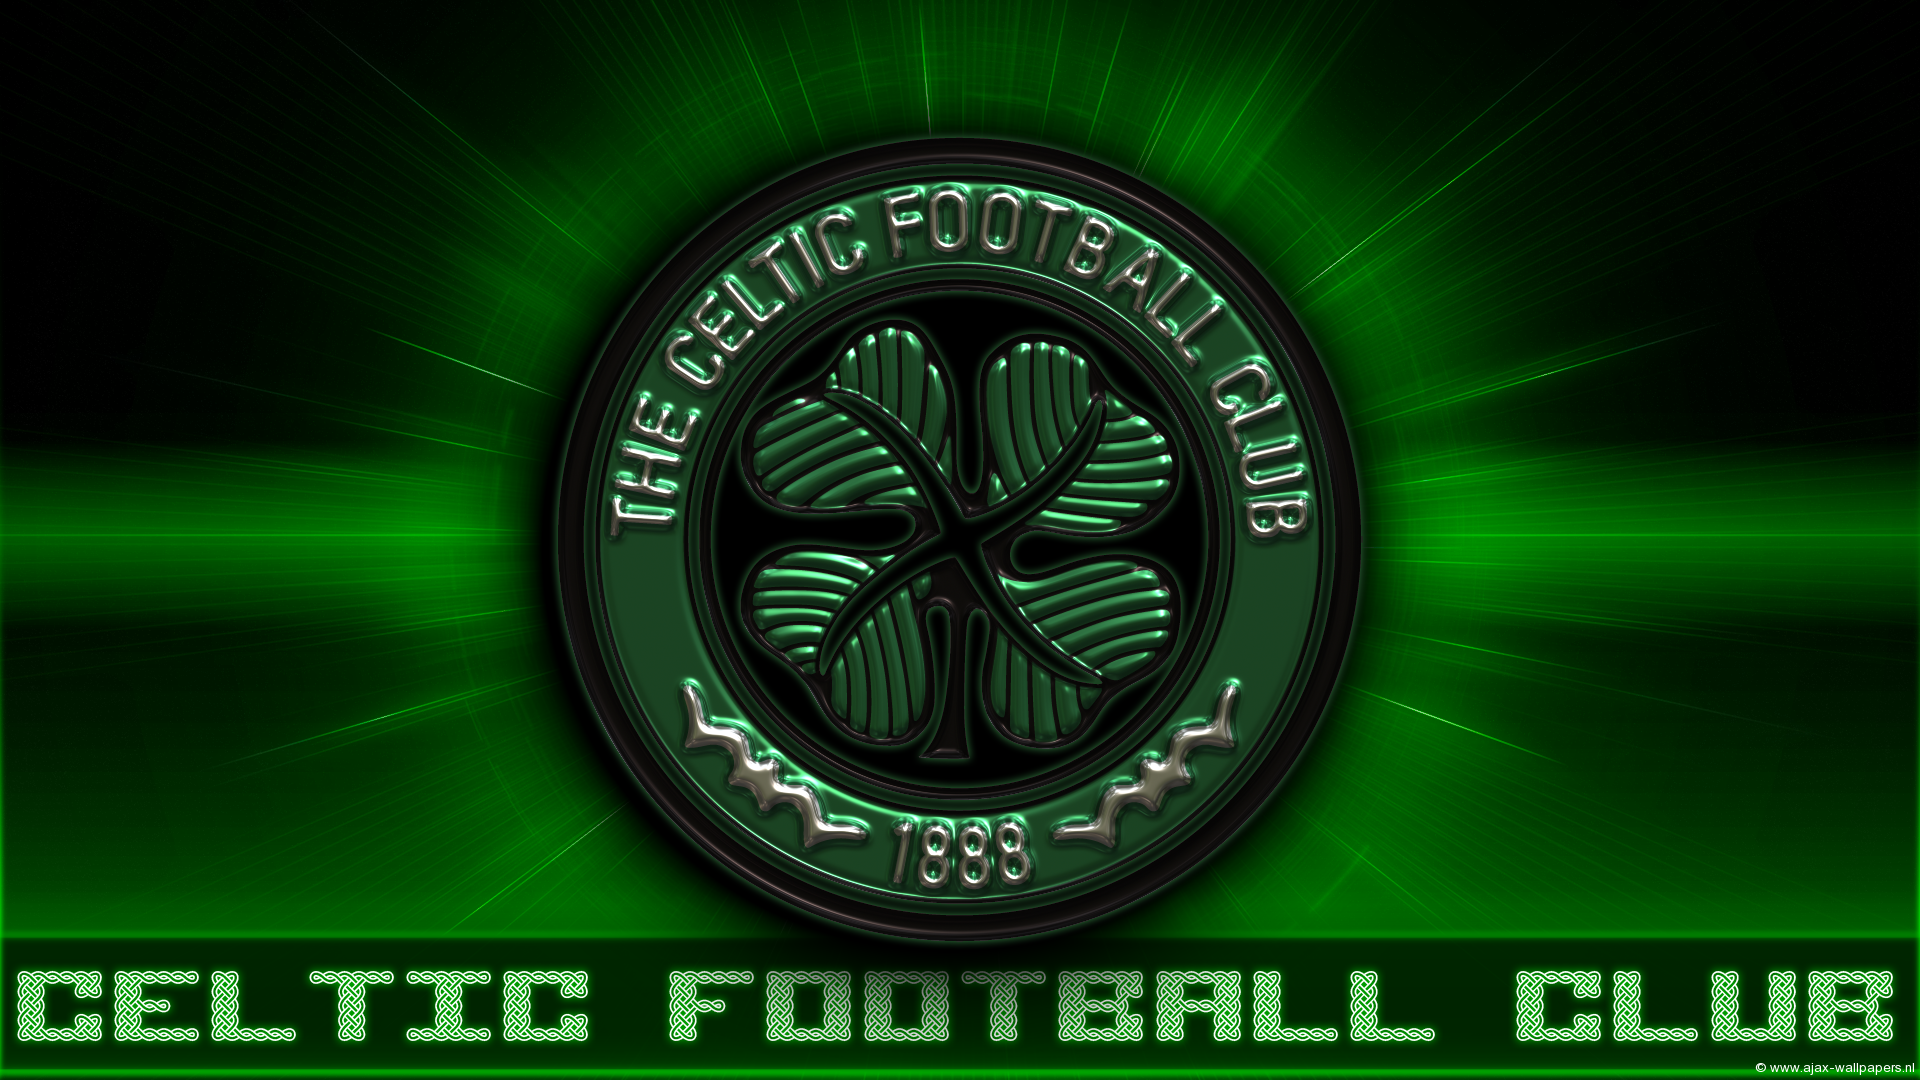 Celtic F.C. Wallpaperx1080